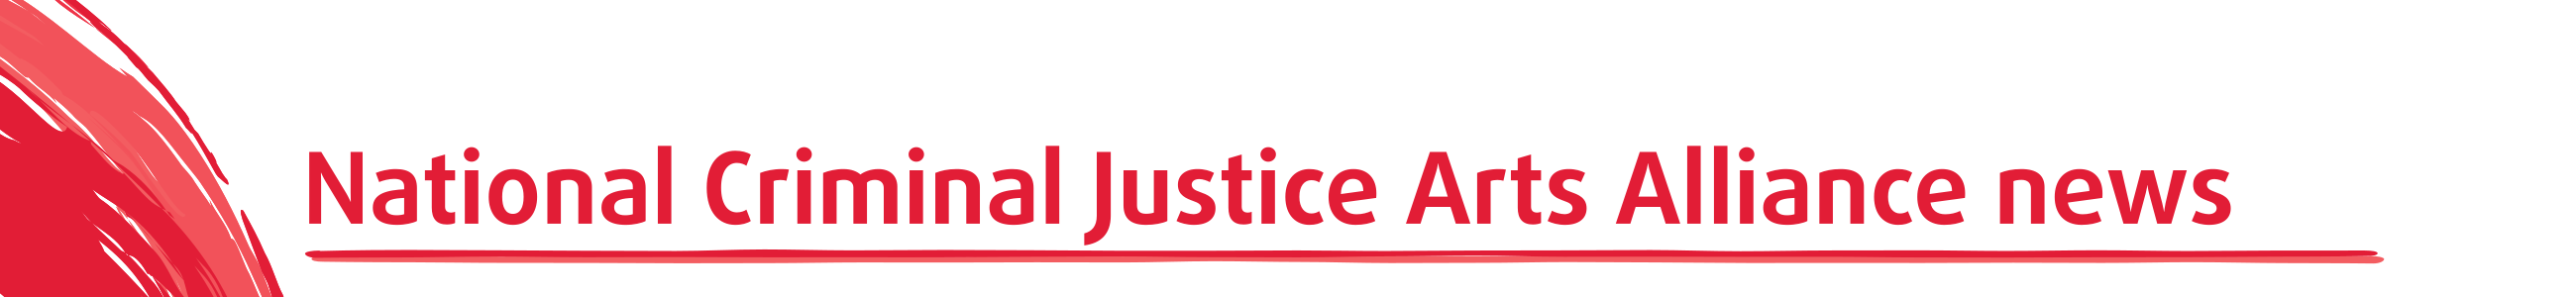 National Criminal Justice Arts Alliance news